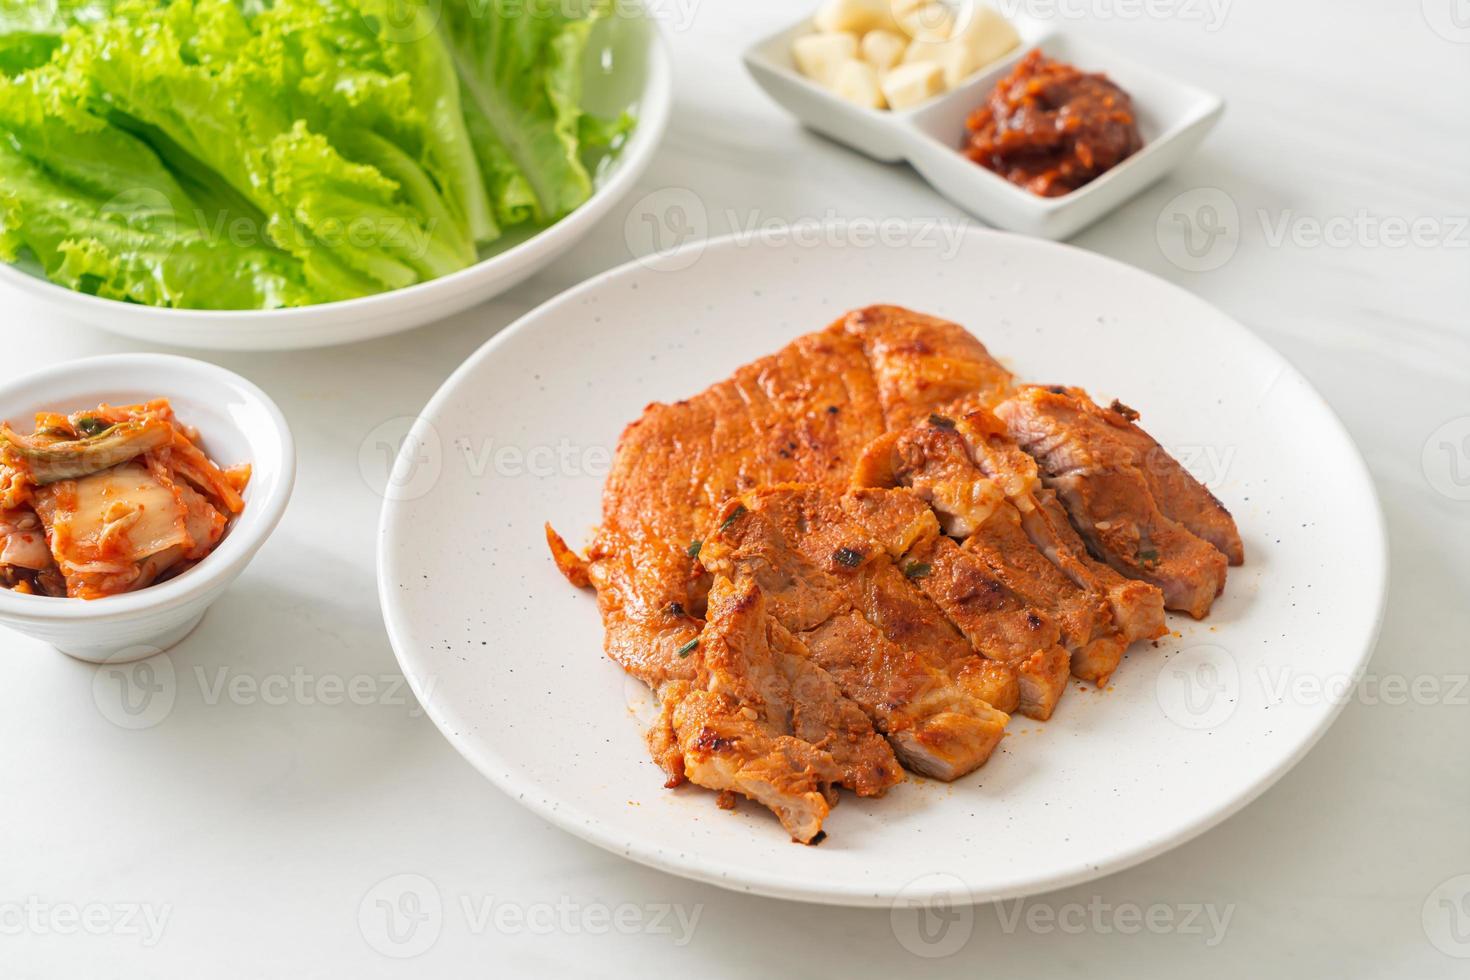 porc grillé sauce kochujang mariné à la coréenne avec légumes et kimchi photo